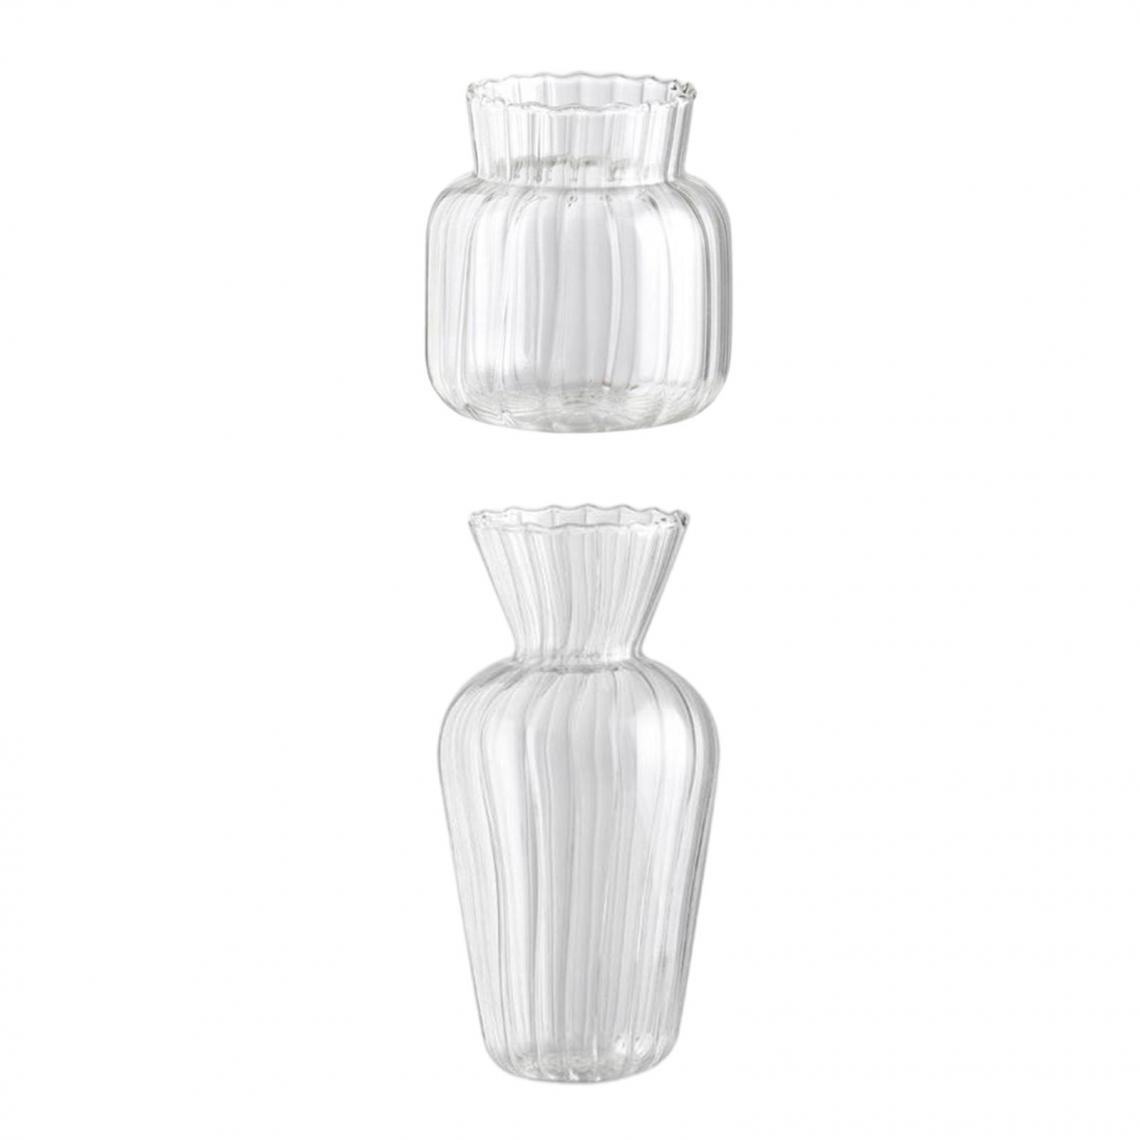 marque generique - Verre de cristal fleur vase transparent vases - Vases